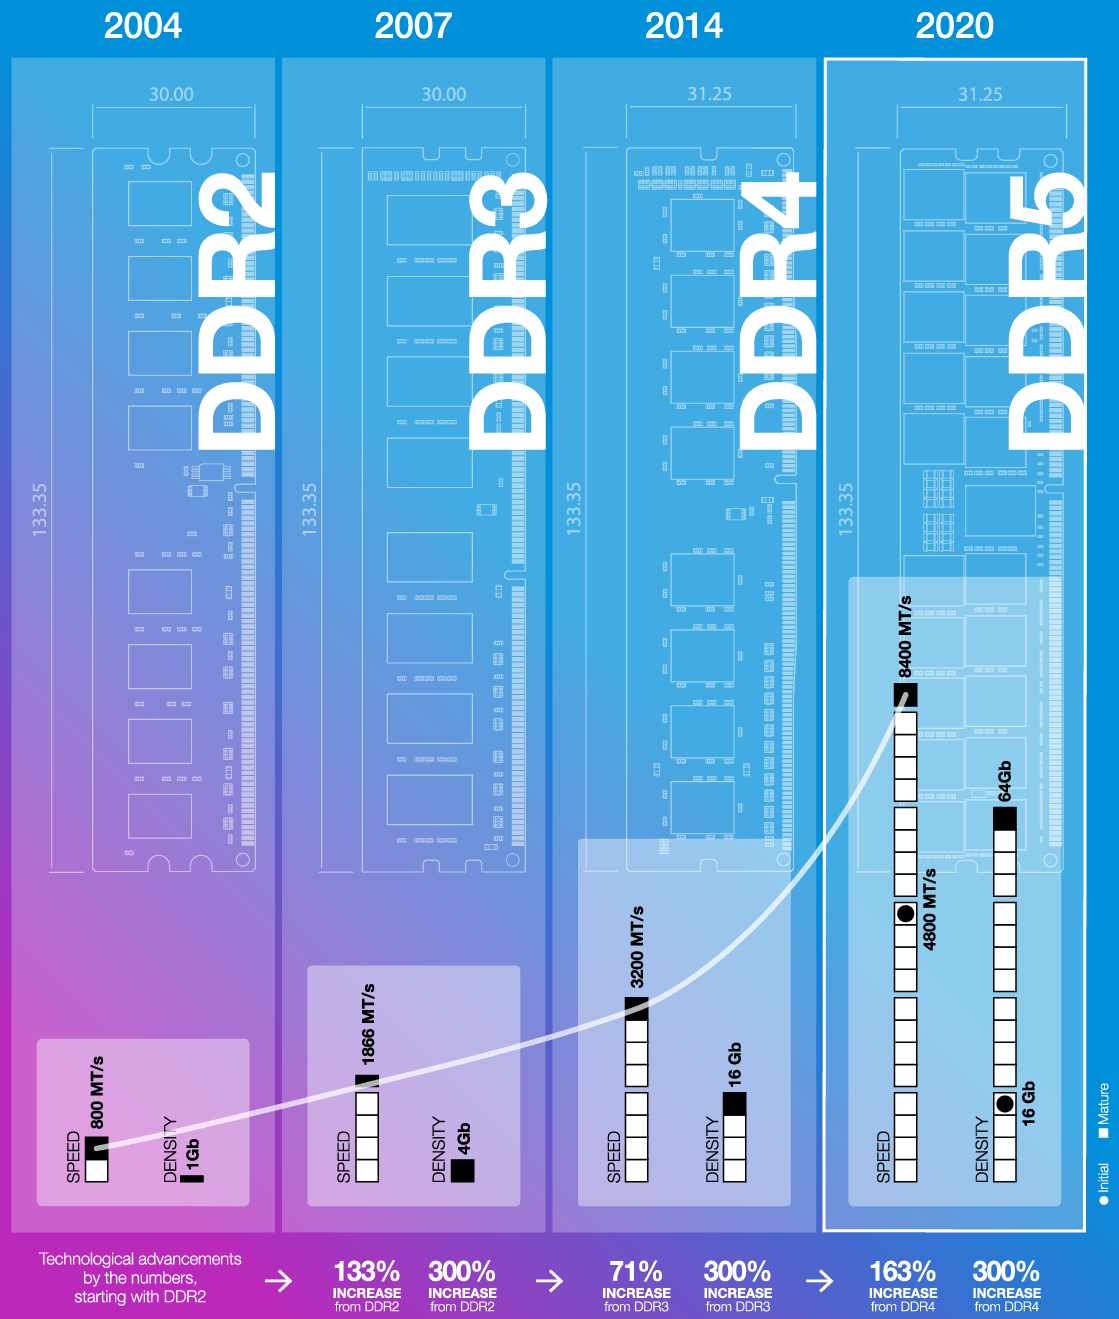 ddr 模型 深度解析DDR模型：内涵、运用及未来展望，解决高维数据分析难题  第5张